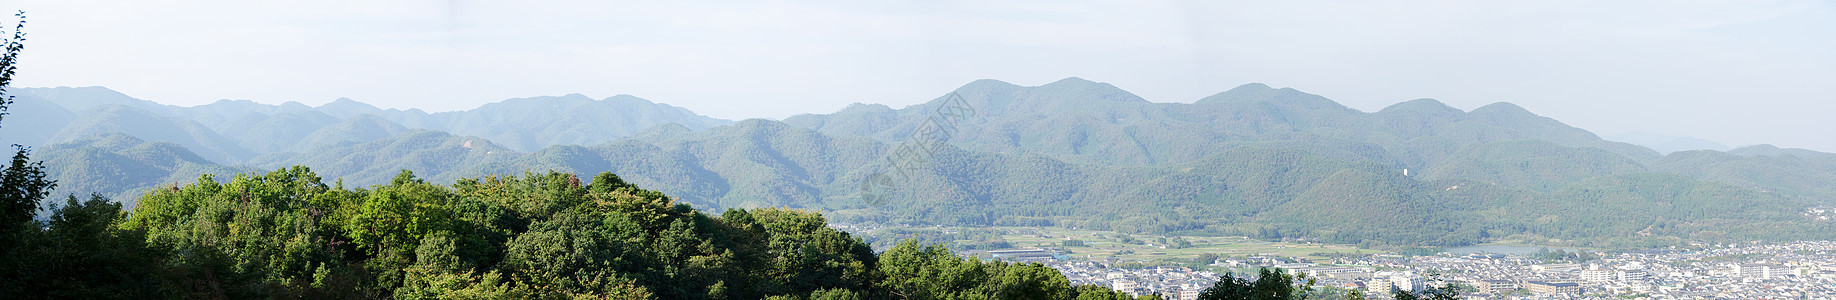 亚林山周围山脉的全景图片